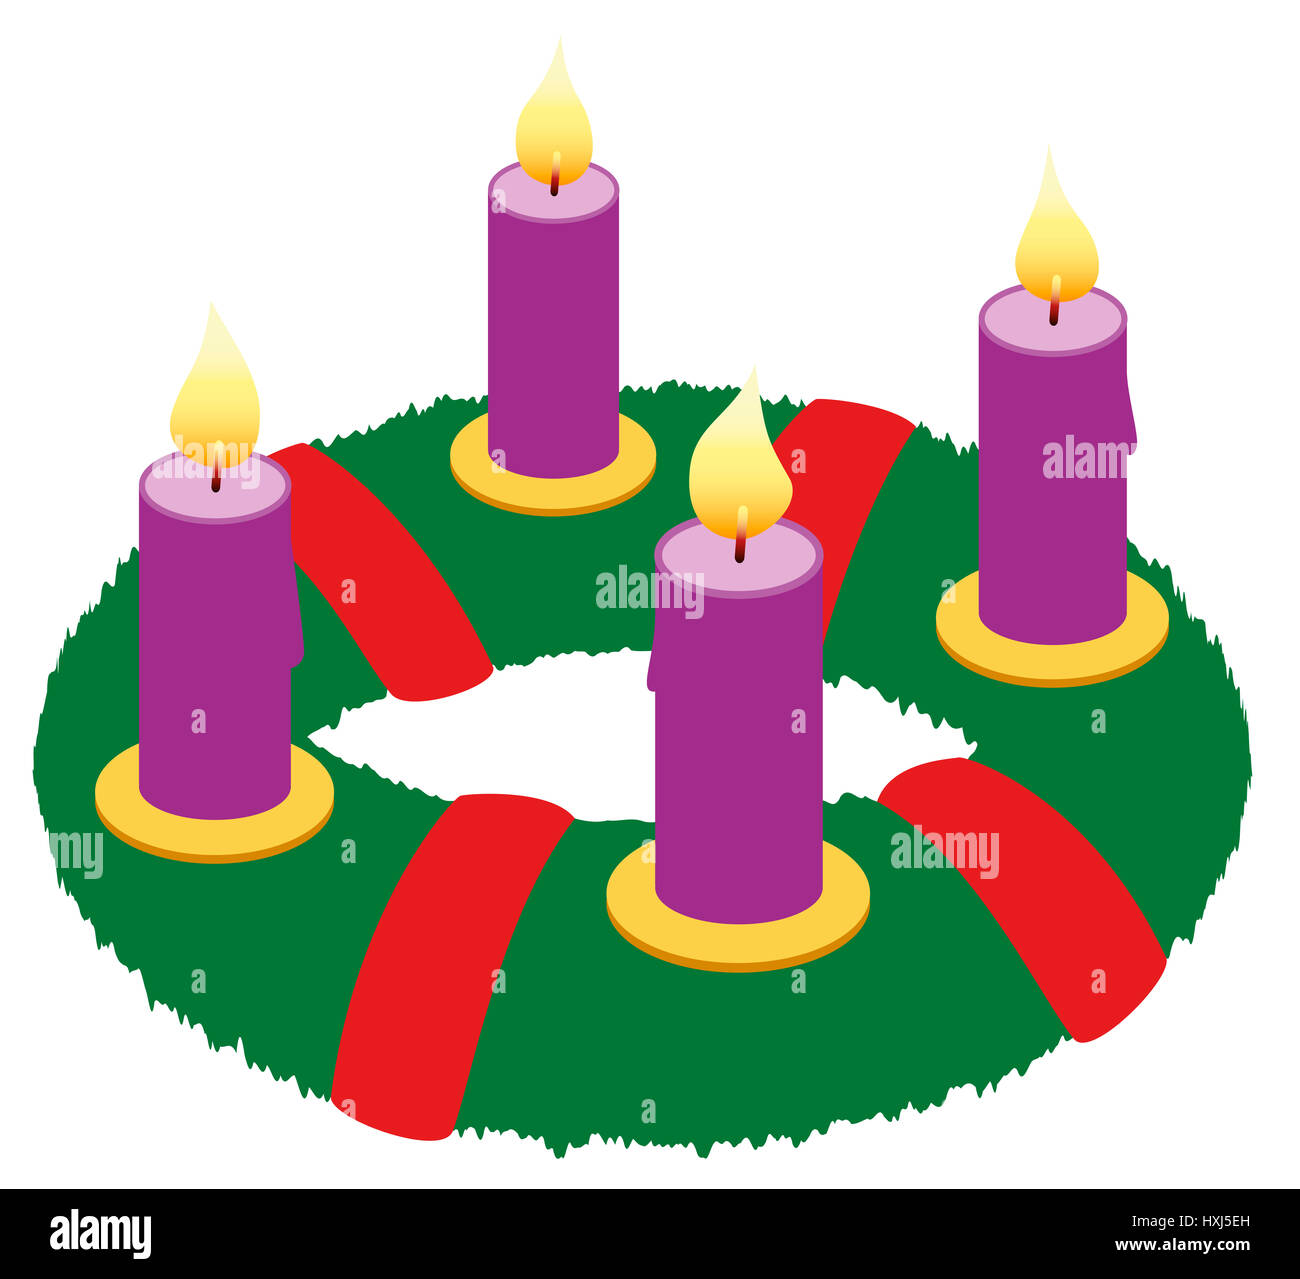 Corona de Adviento con la quema de velas púrpura y lazos rojos - Ilustración icono aislado sobre fondo blanco. Foto de stock